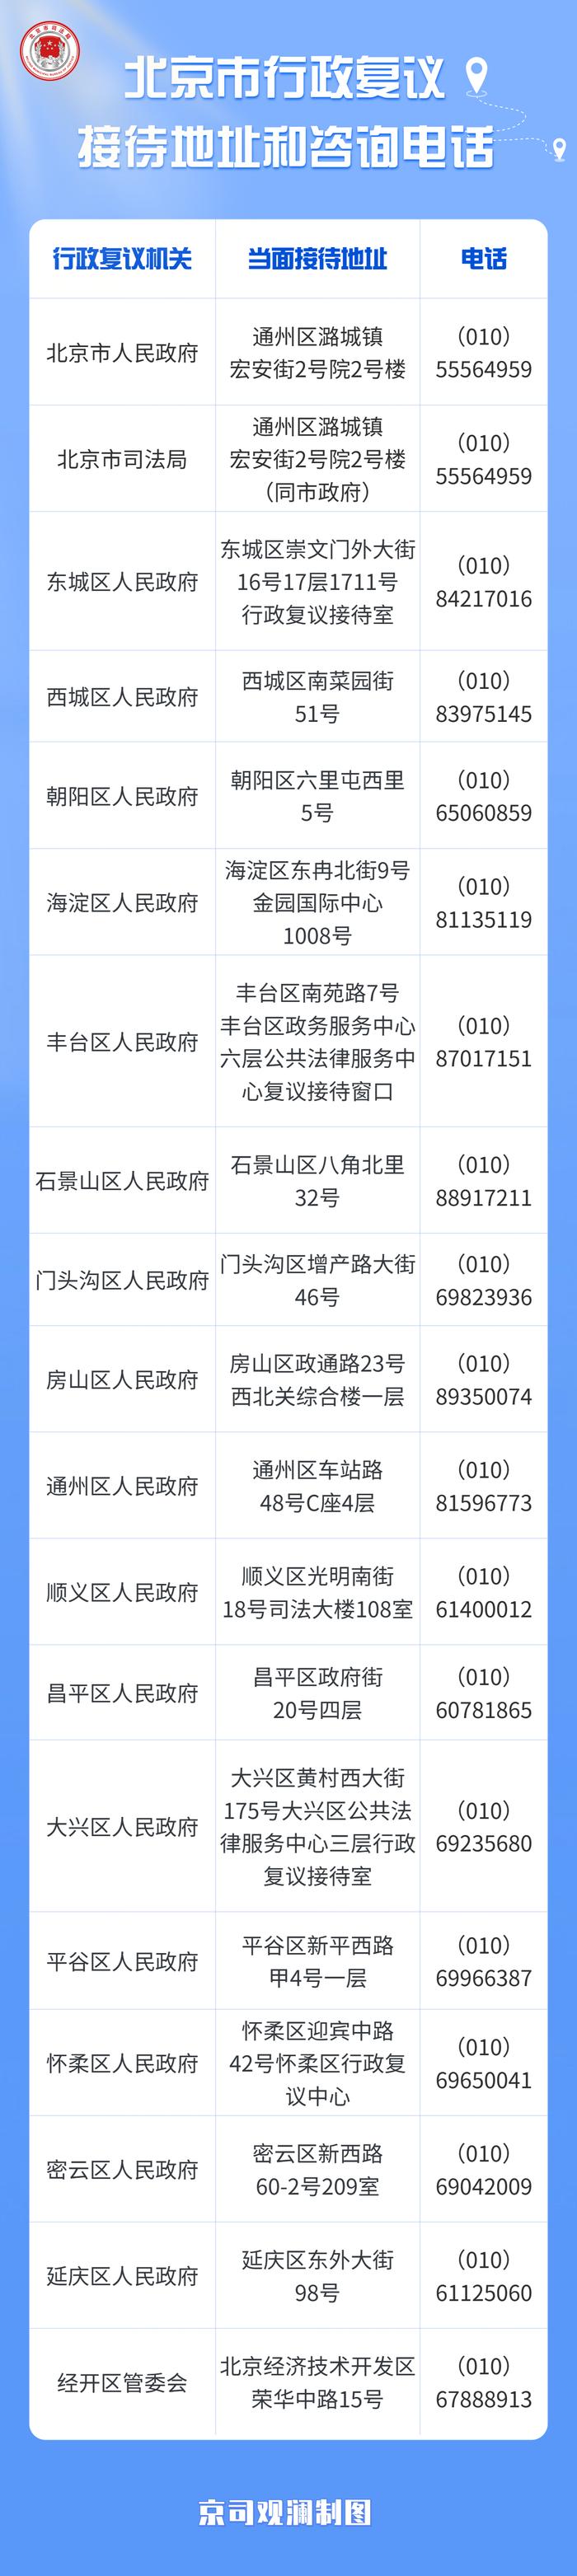 北京市19家行政复议机关接待地址和咨询电话更新